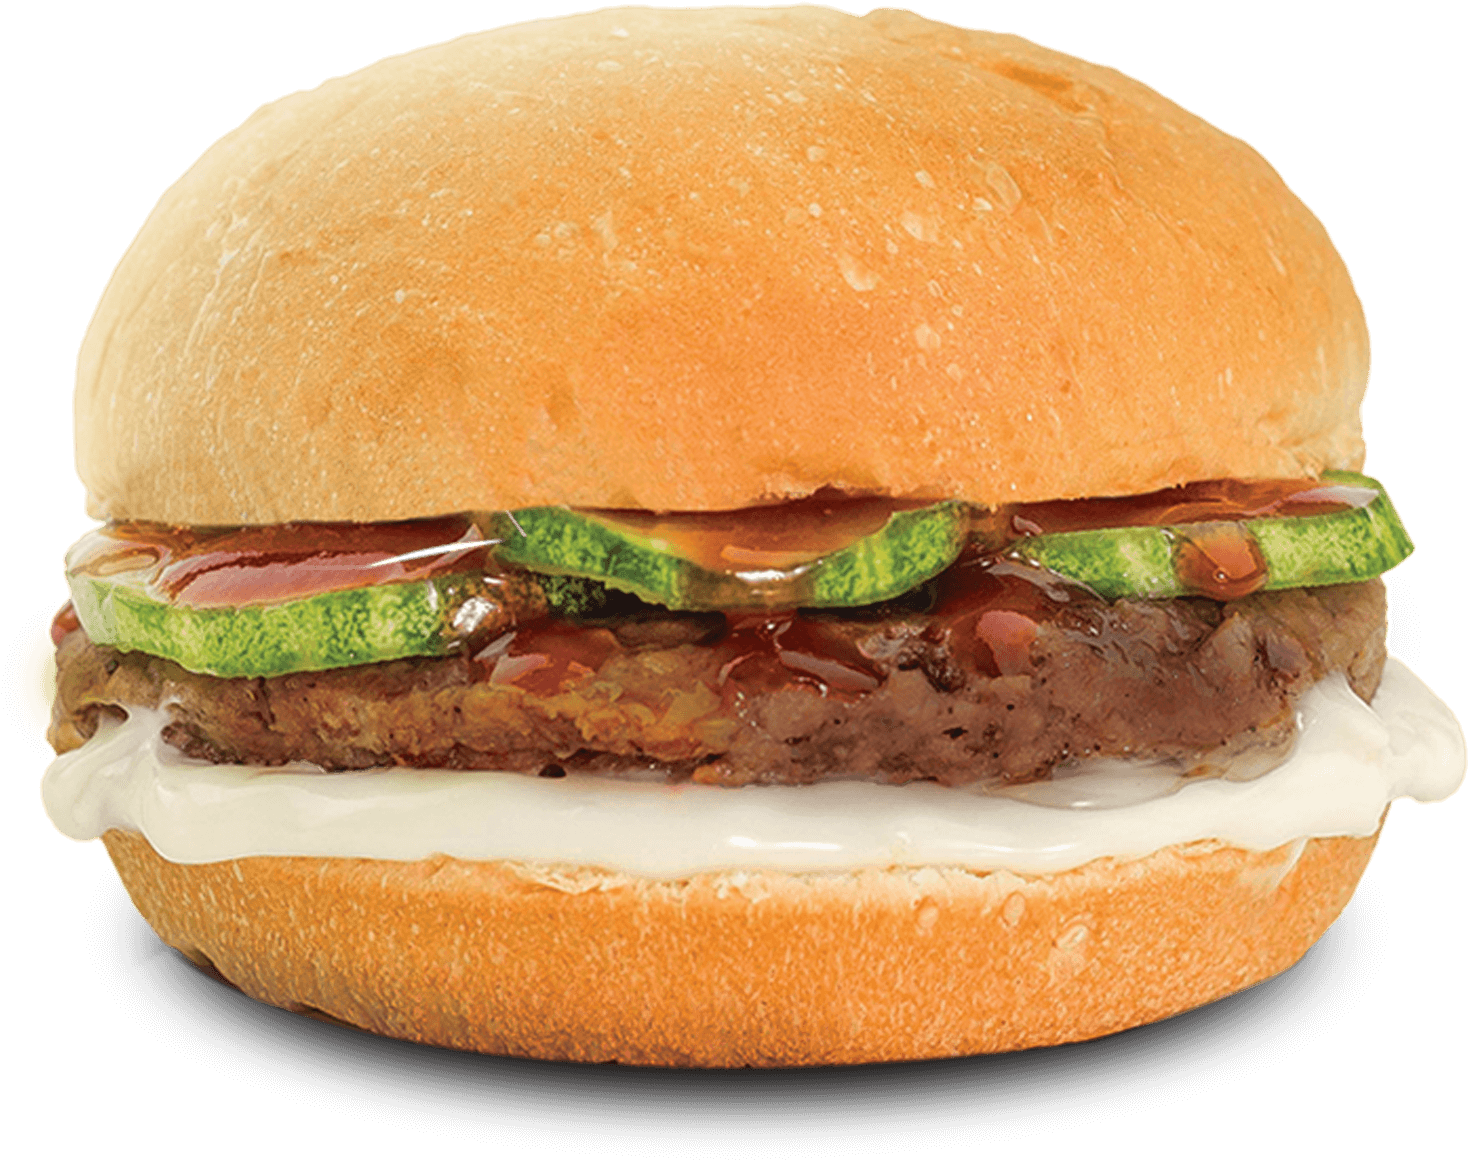 A Close Up Of A Burger